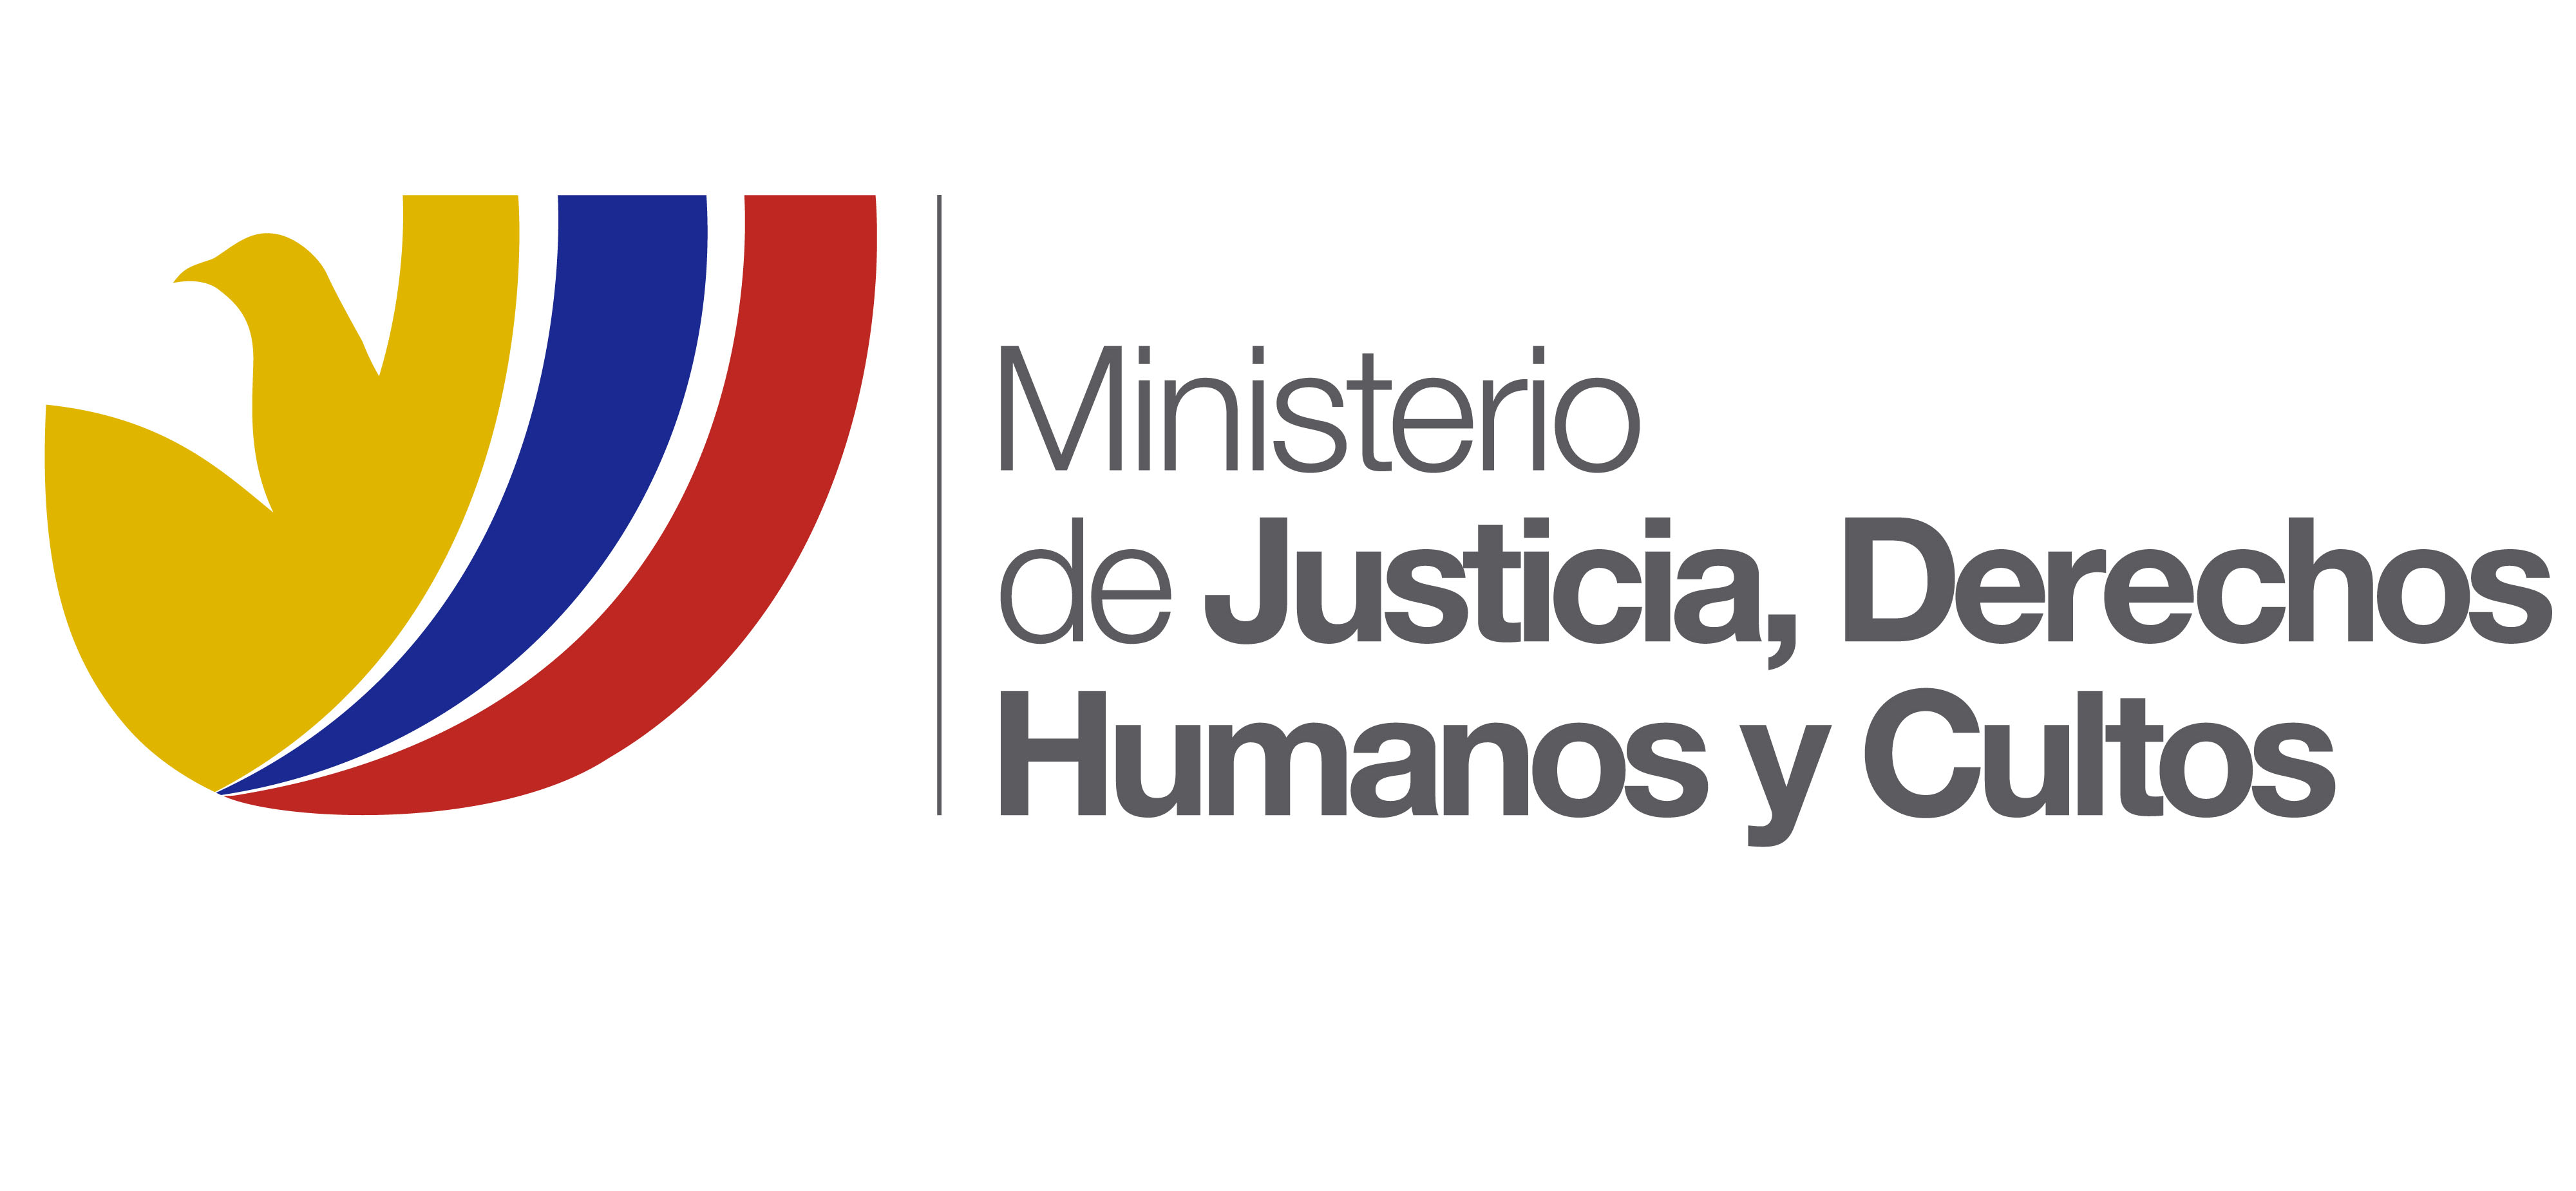 Ministerio de Justicia, Derechos Humanos y Cultos